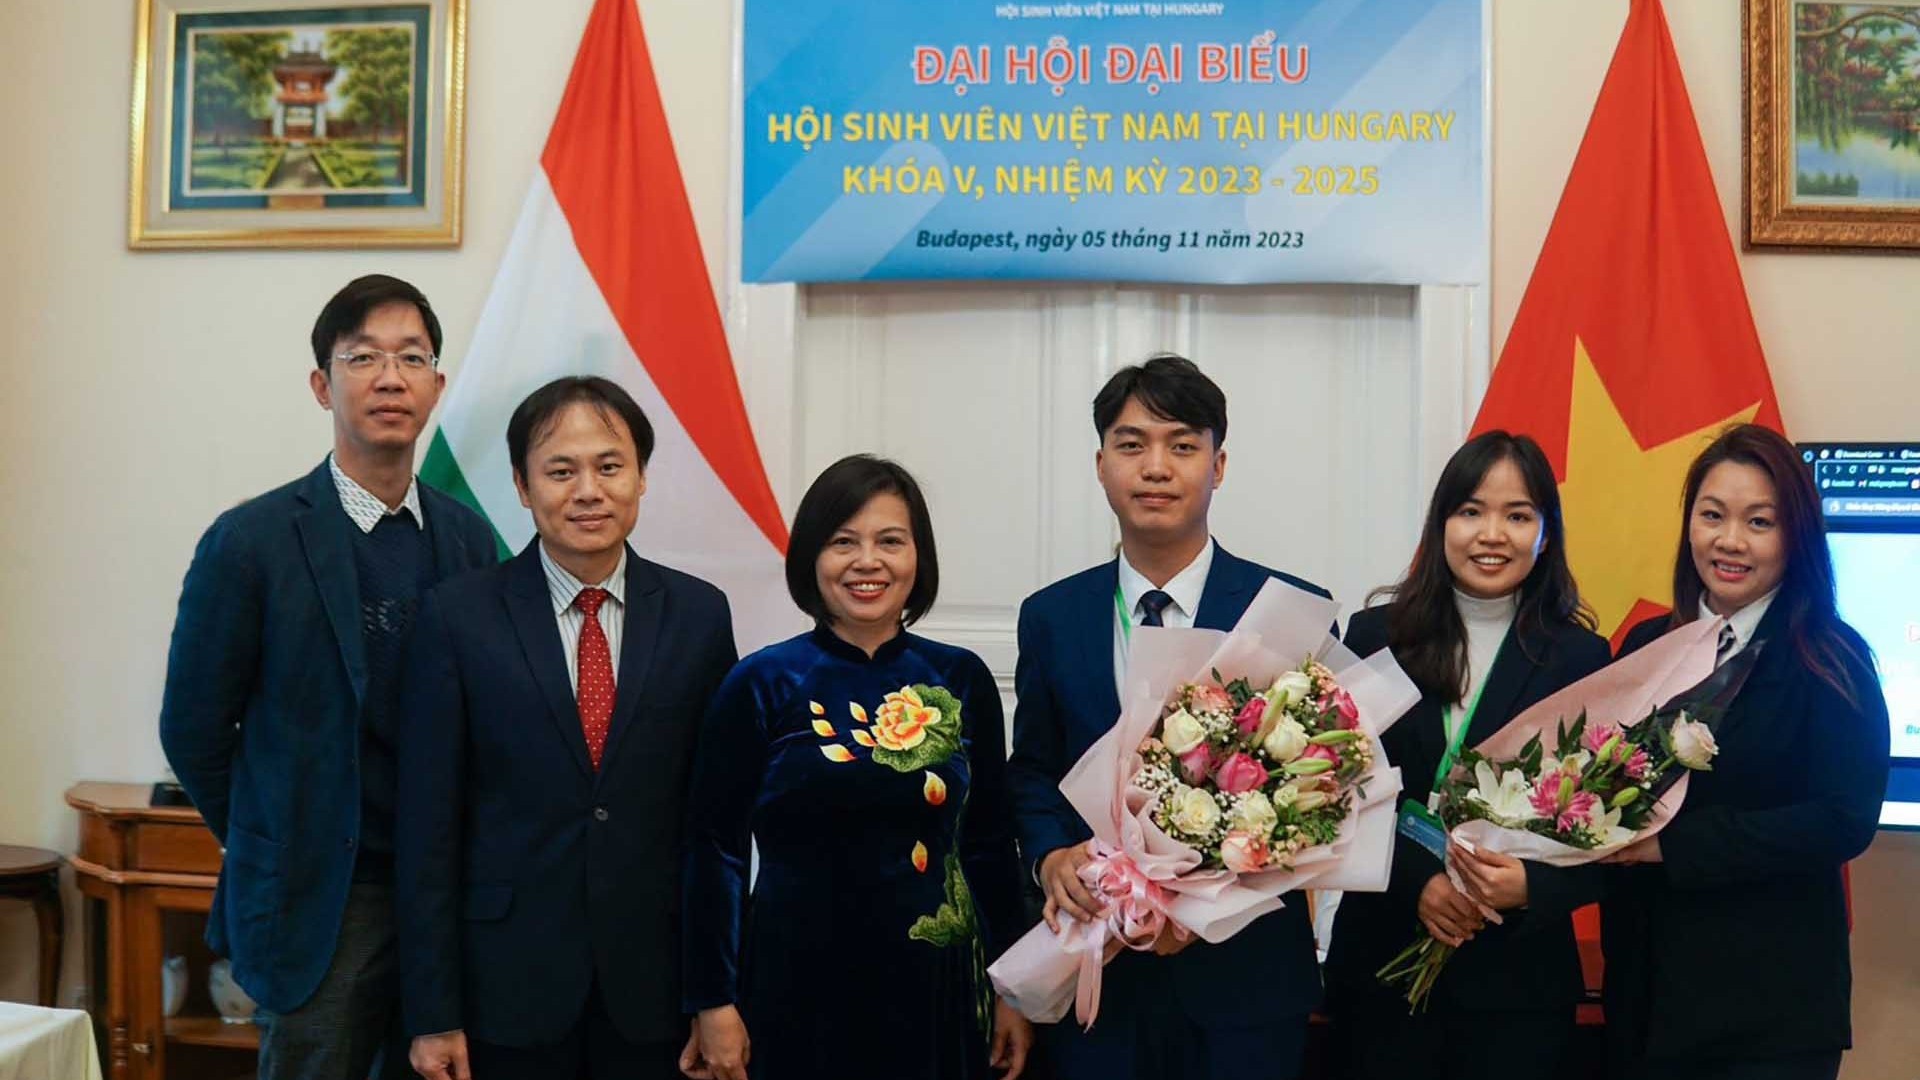 Hội sinh viên Việt Nam tại Hungary tổ chức Đại hội lần thứ V, nhiệm kỳ 2023-2025